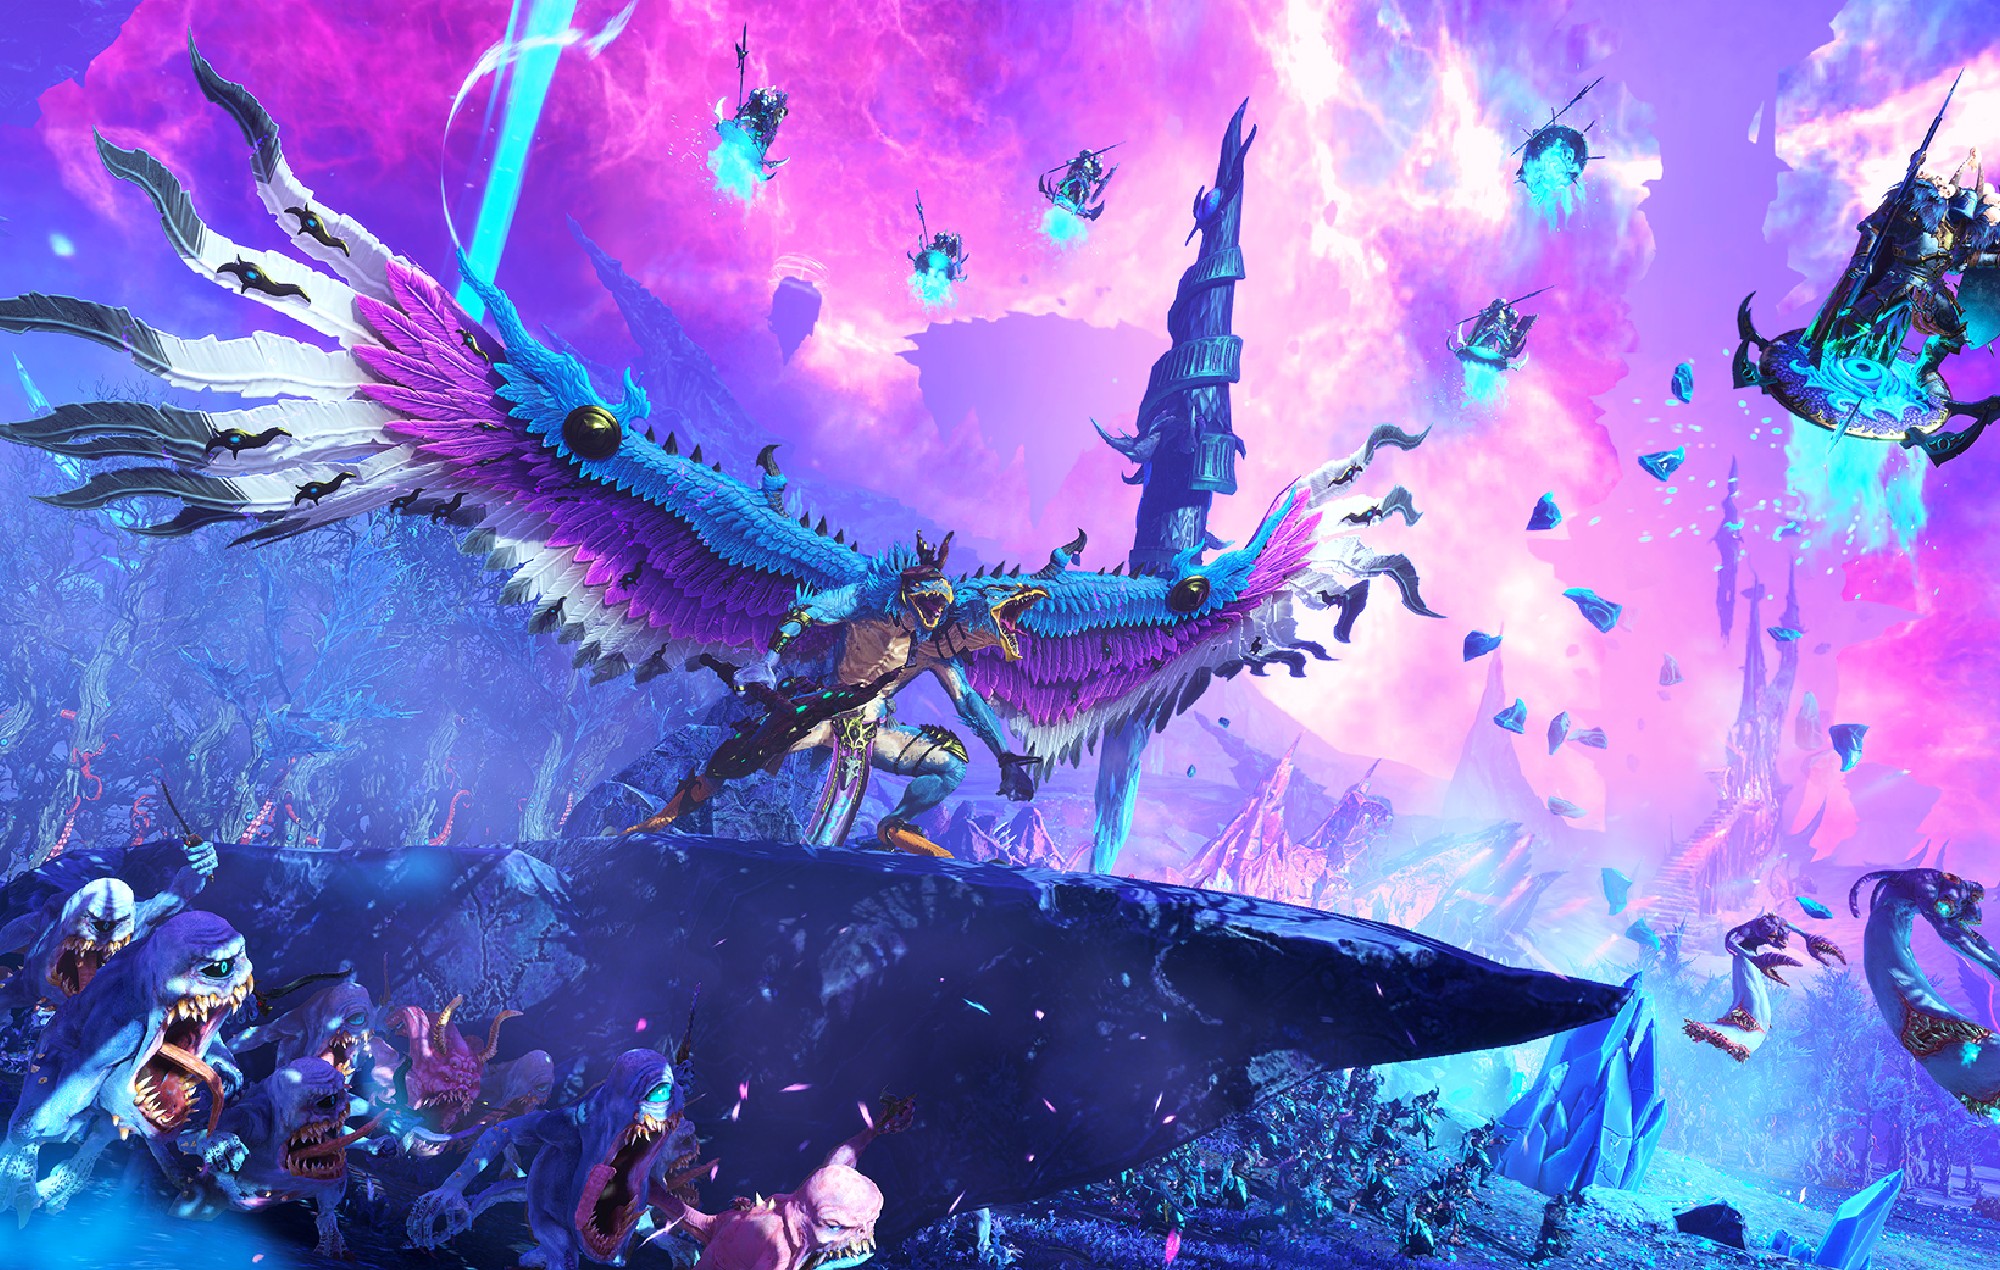 Le gameplay de "Total War: Warhammer 3" montre des démons du chaos contre des dragons et des sorciers